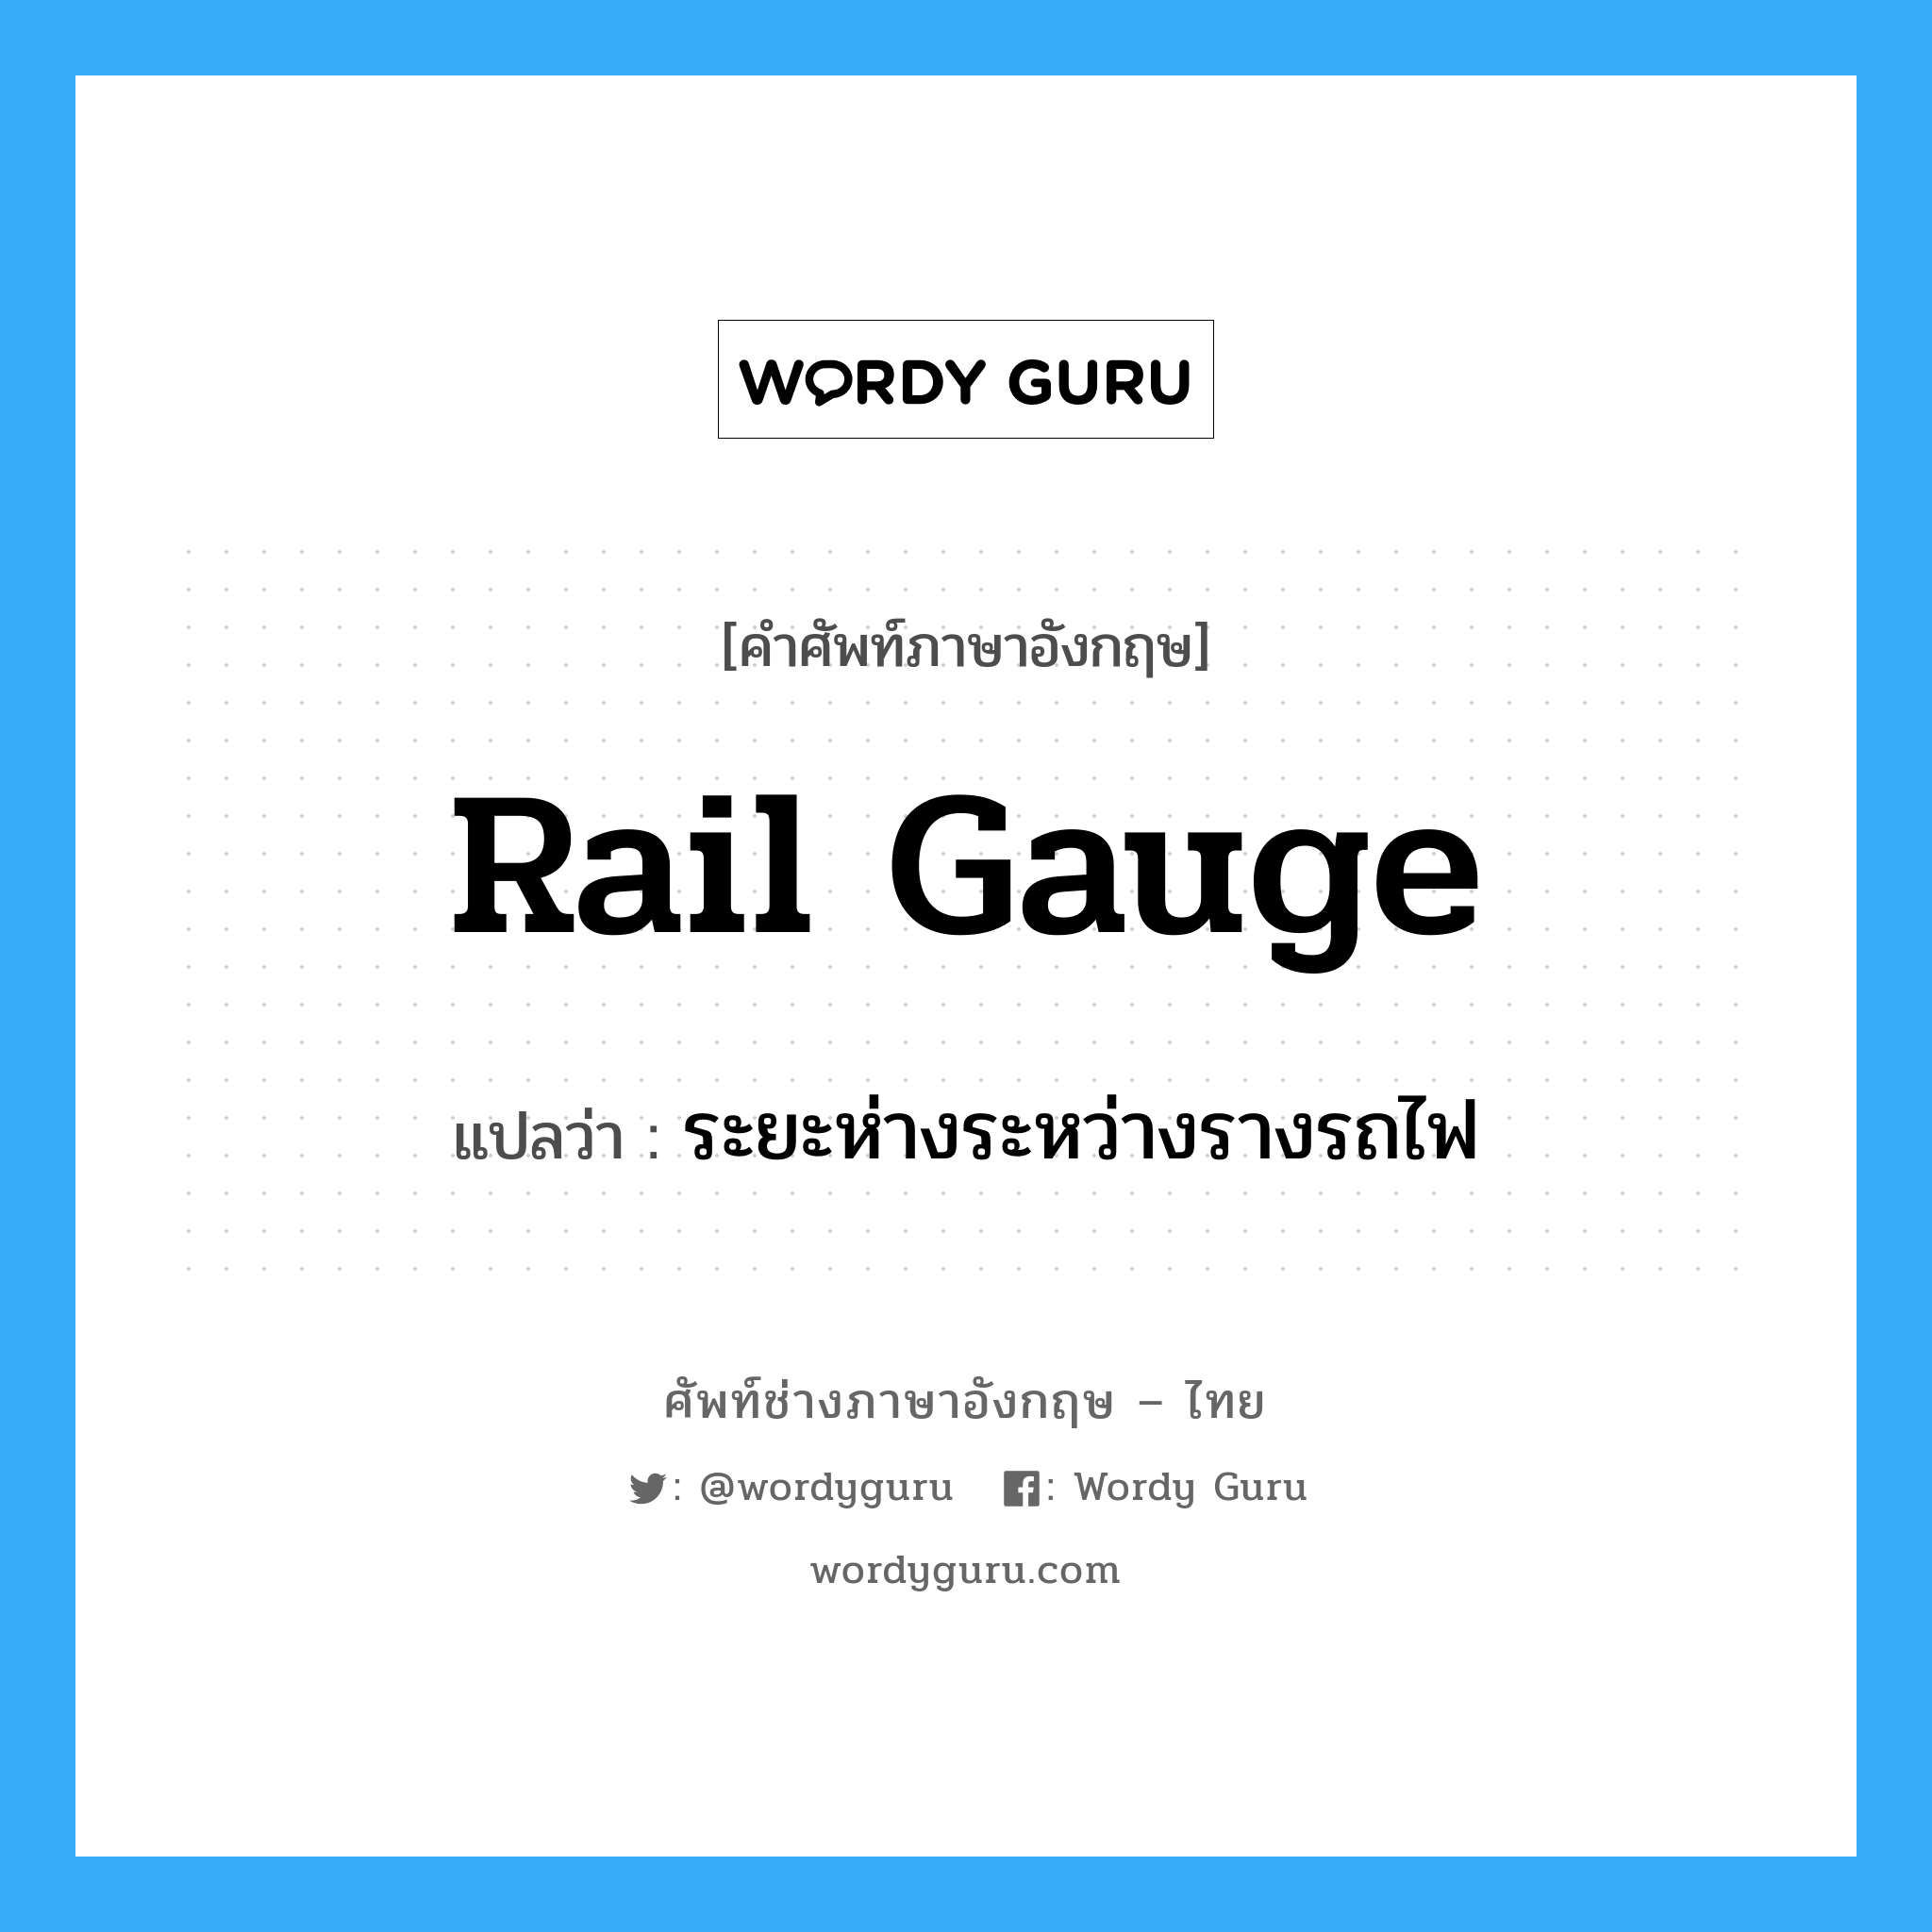 rail gauge แปลว่า?, คำศัพท์ช่างภาษาอังกฤษ - ไทย rail gauge คำศัพท์ภาษาอังกฤษ rail gauge แปลว่า ระยะห่างระหว่างรางรถไฟ